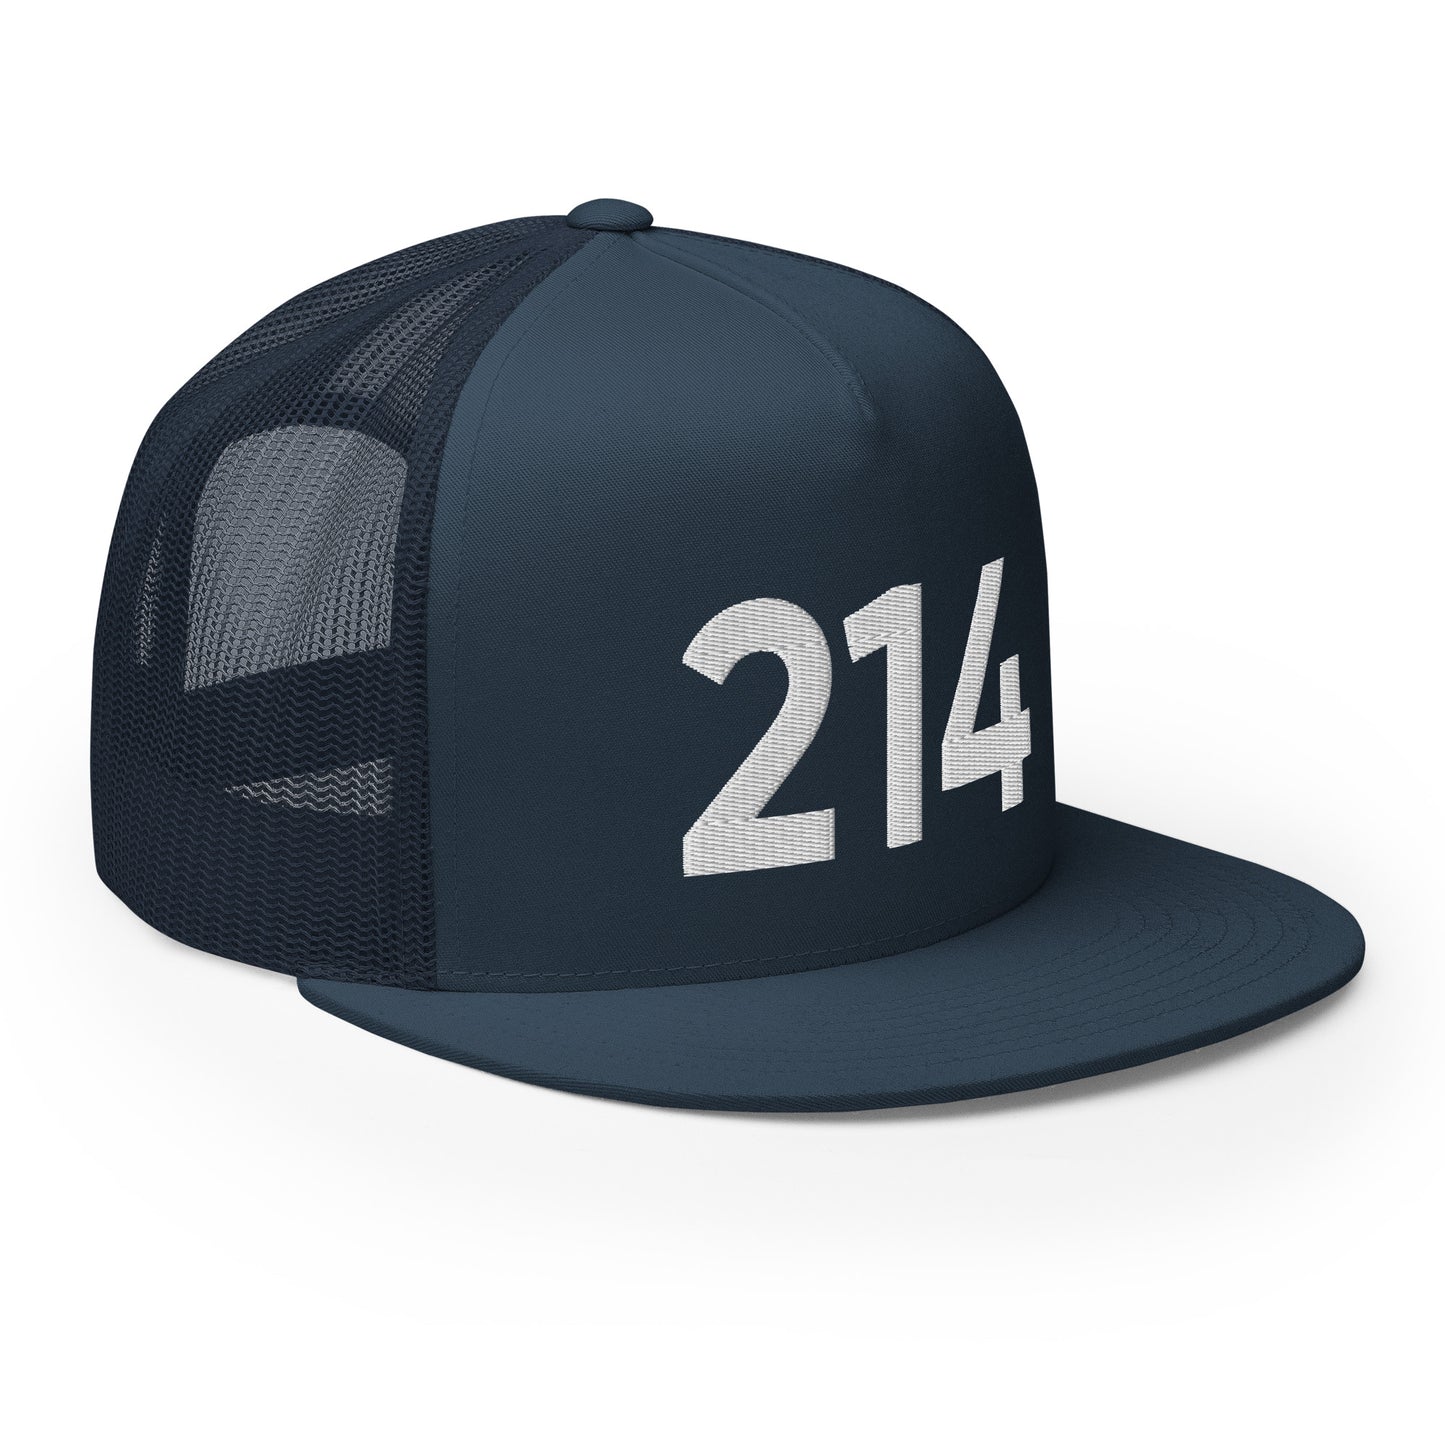 214 Dallas Trucker Hat